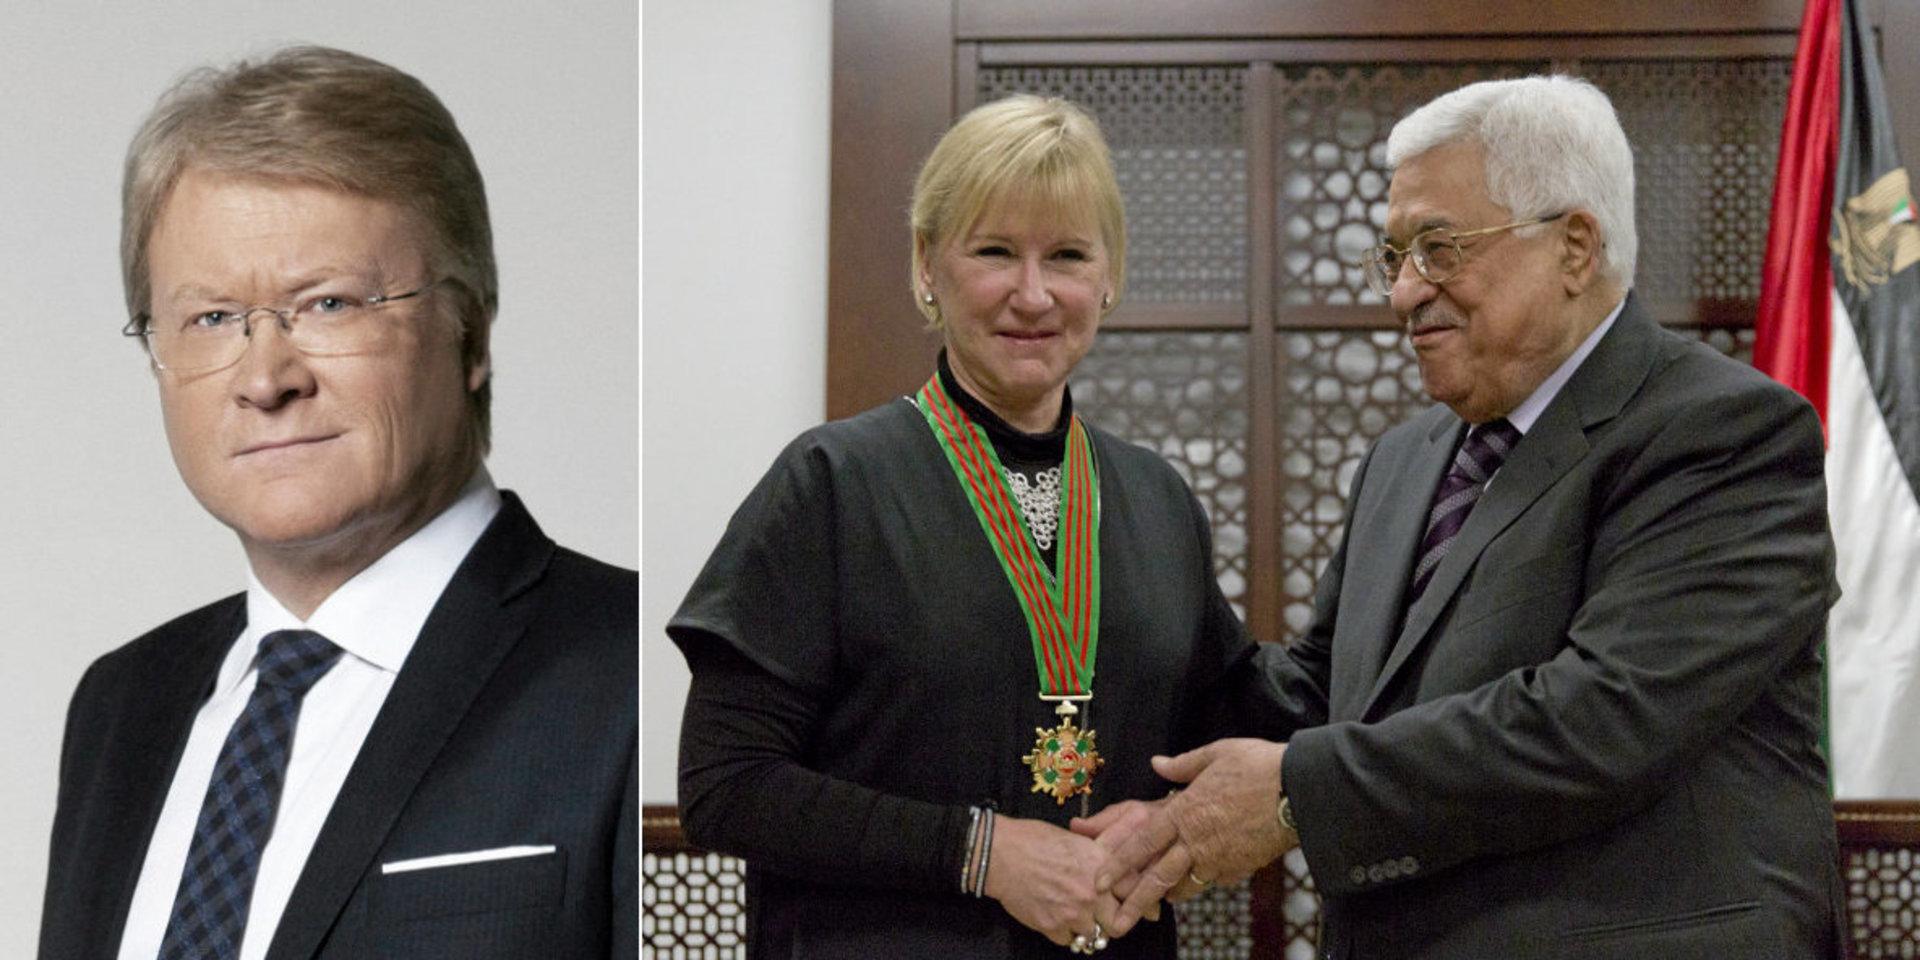 Lars Adaktusson (KD)
, riksdagsledamot och utrikespolitisk talesperson. Till höger: Margot Wallström (S) dekoreras av palestinske presidenten Mahmoud Abbas i Ramallah 2016.